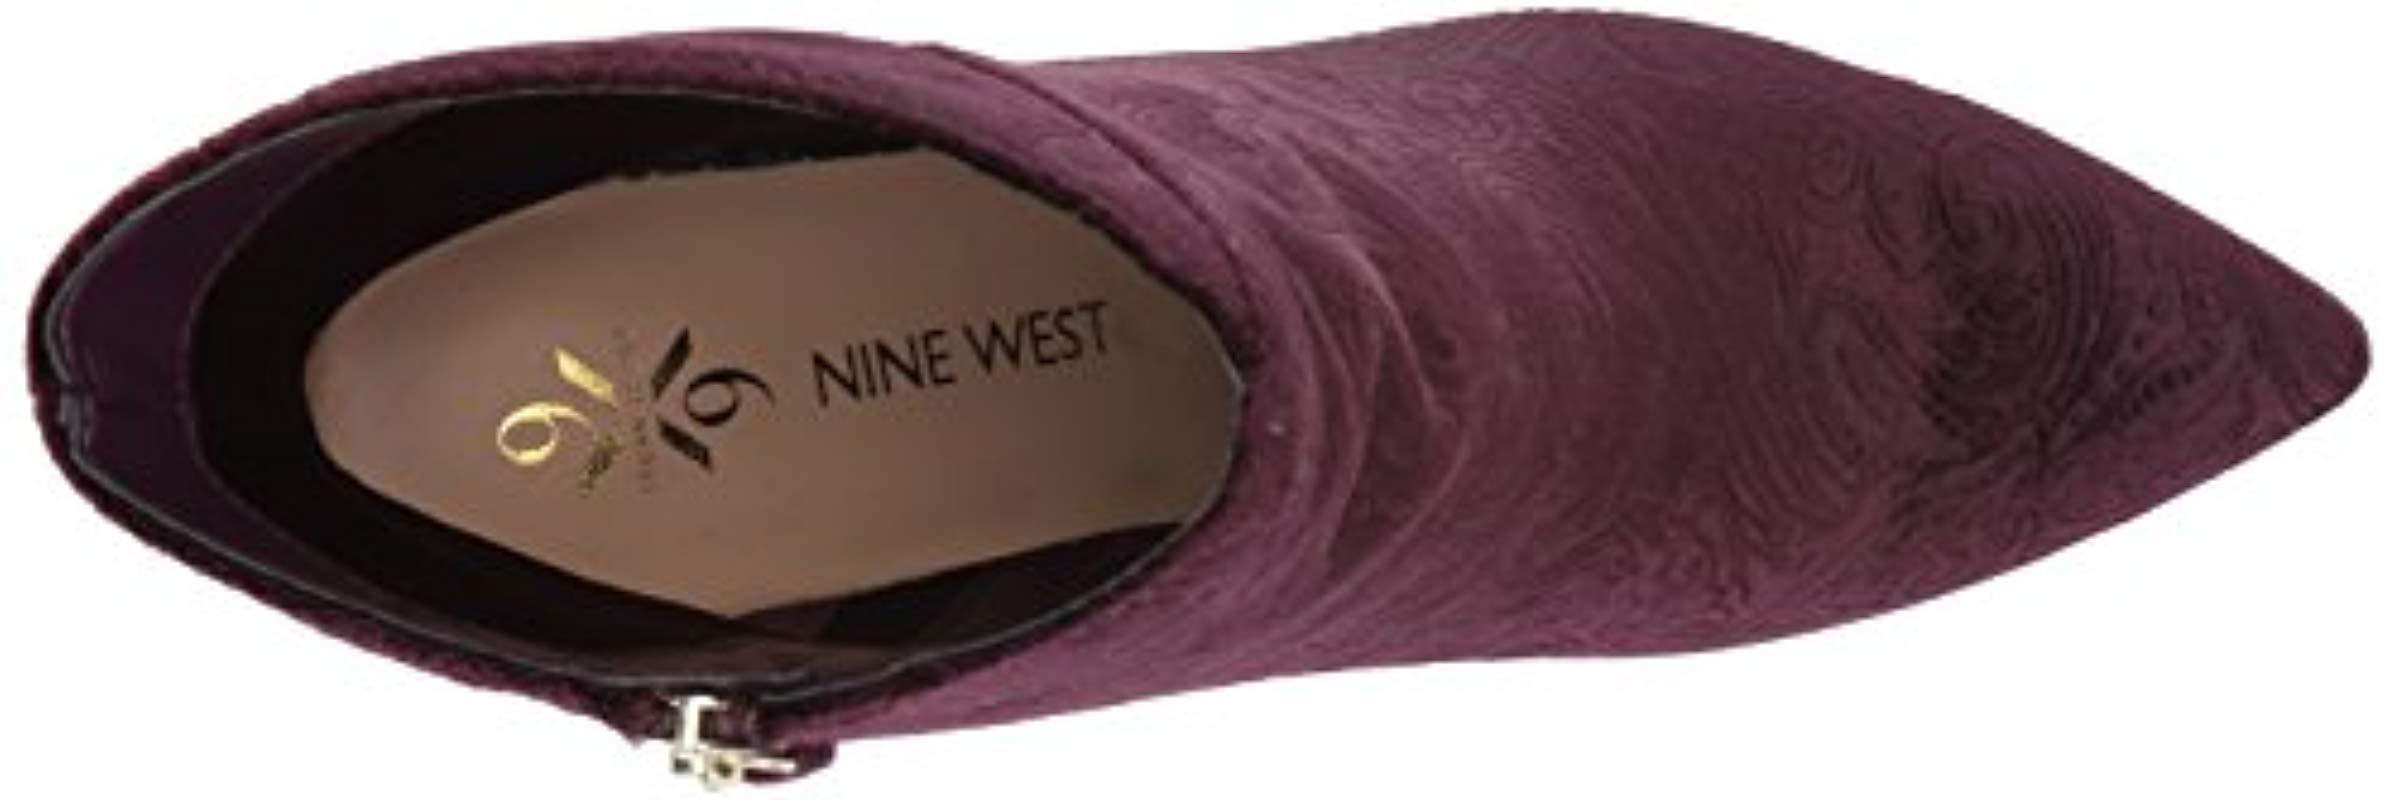 nine west argyle